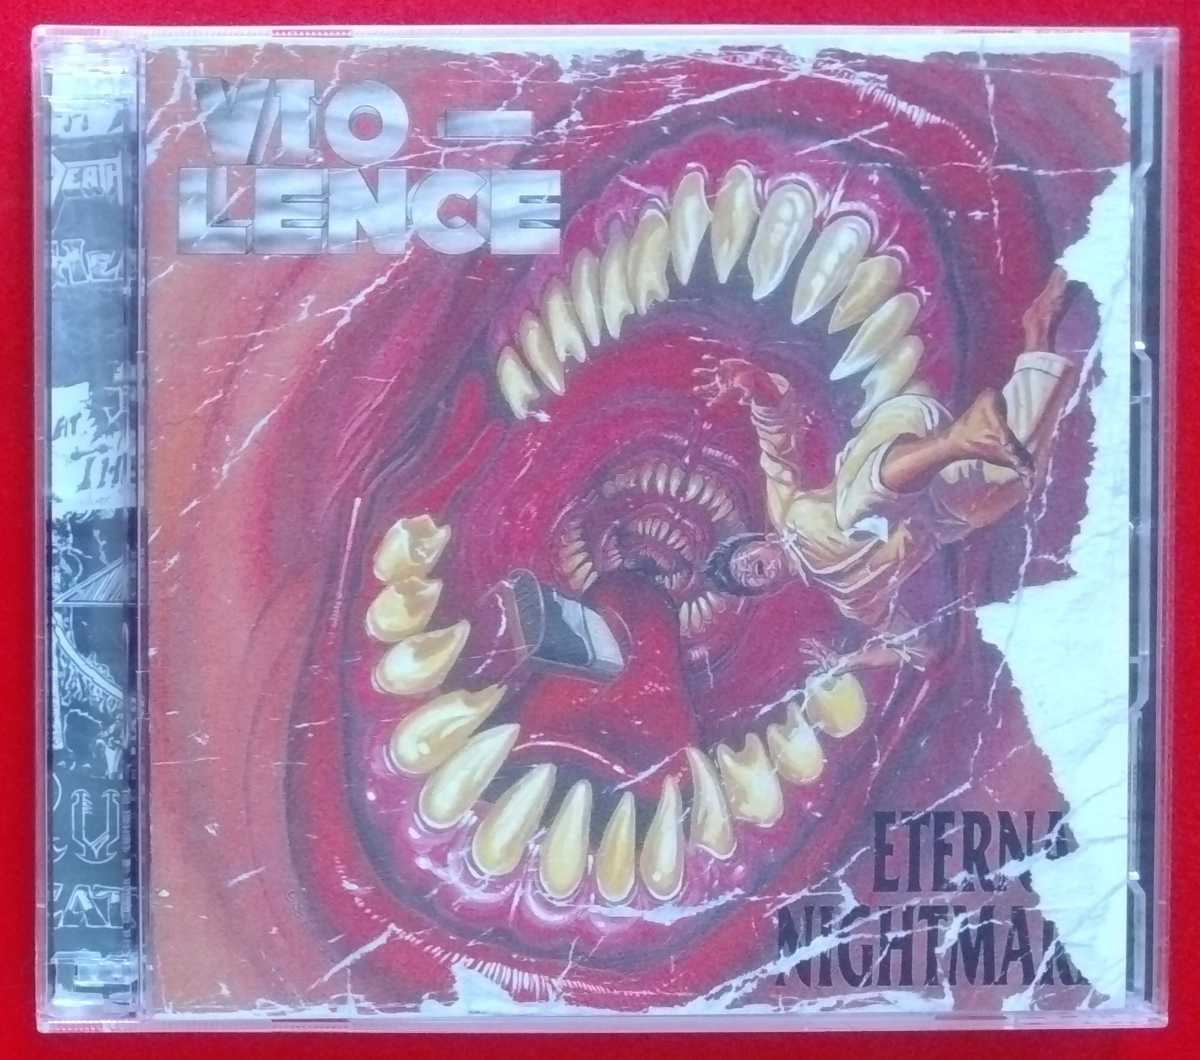 ベイエリア・スラッシュ VIO-LENCE-ETERNAL NIGHTMARE + Live @ Slims SF 12/14/2001 2CD リマスター MACHINE HEAD FORBIDDEN TORQUE_画像1